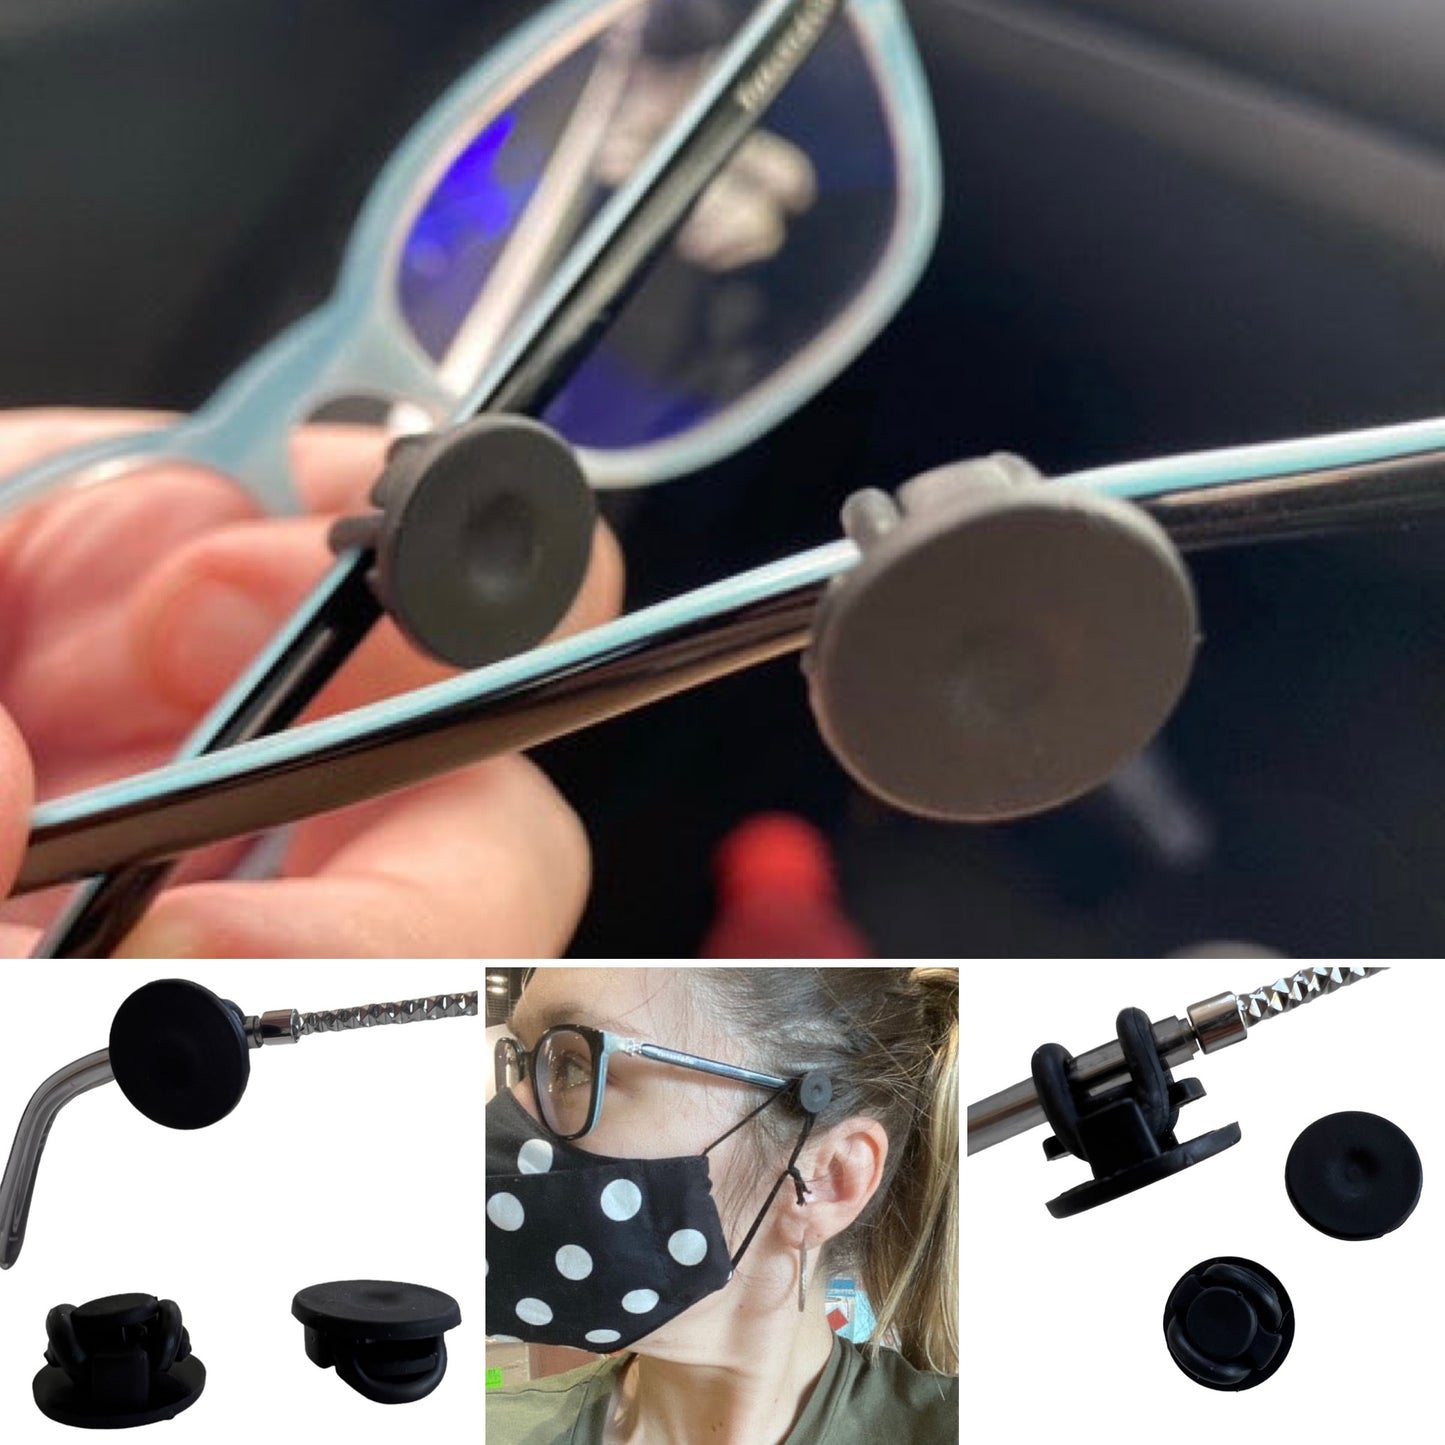 Glasses Button — Mask Accessory